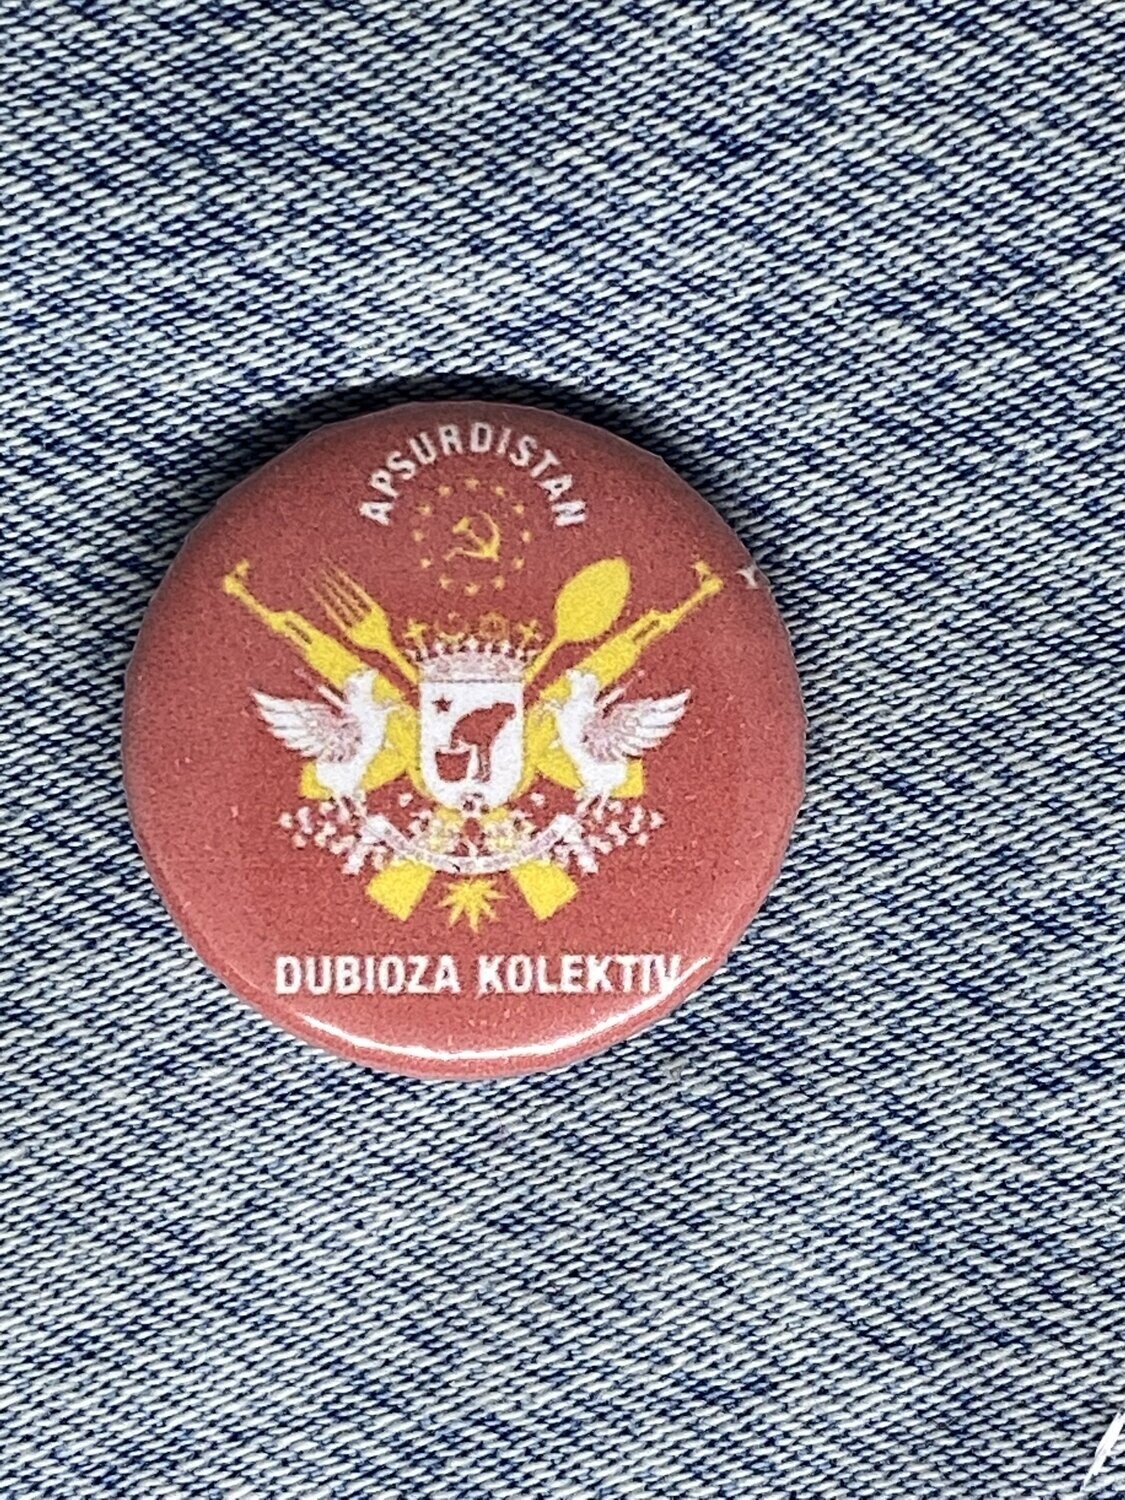 Dubioza Kolektiv Badge